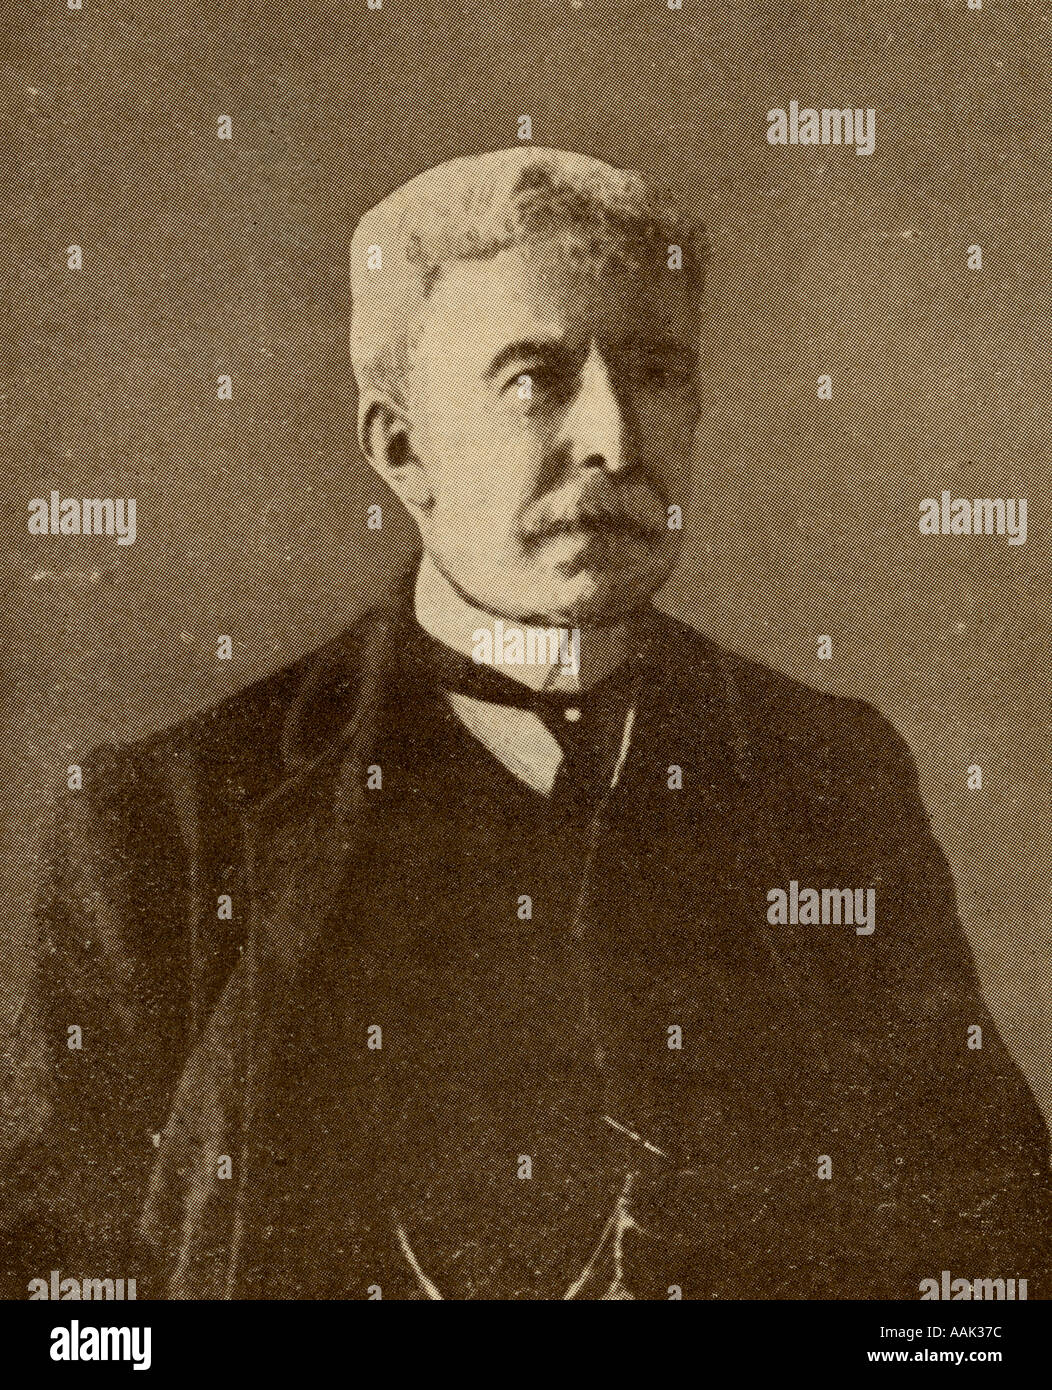 Antonio Fogazzaro, 1842 -1911. Le romancier italien et promoteur du catholicisme libéral. Banque D'Images